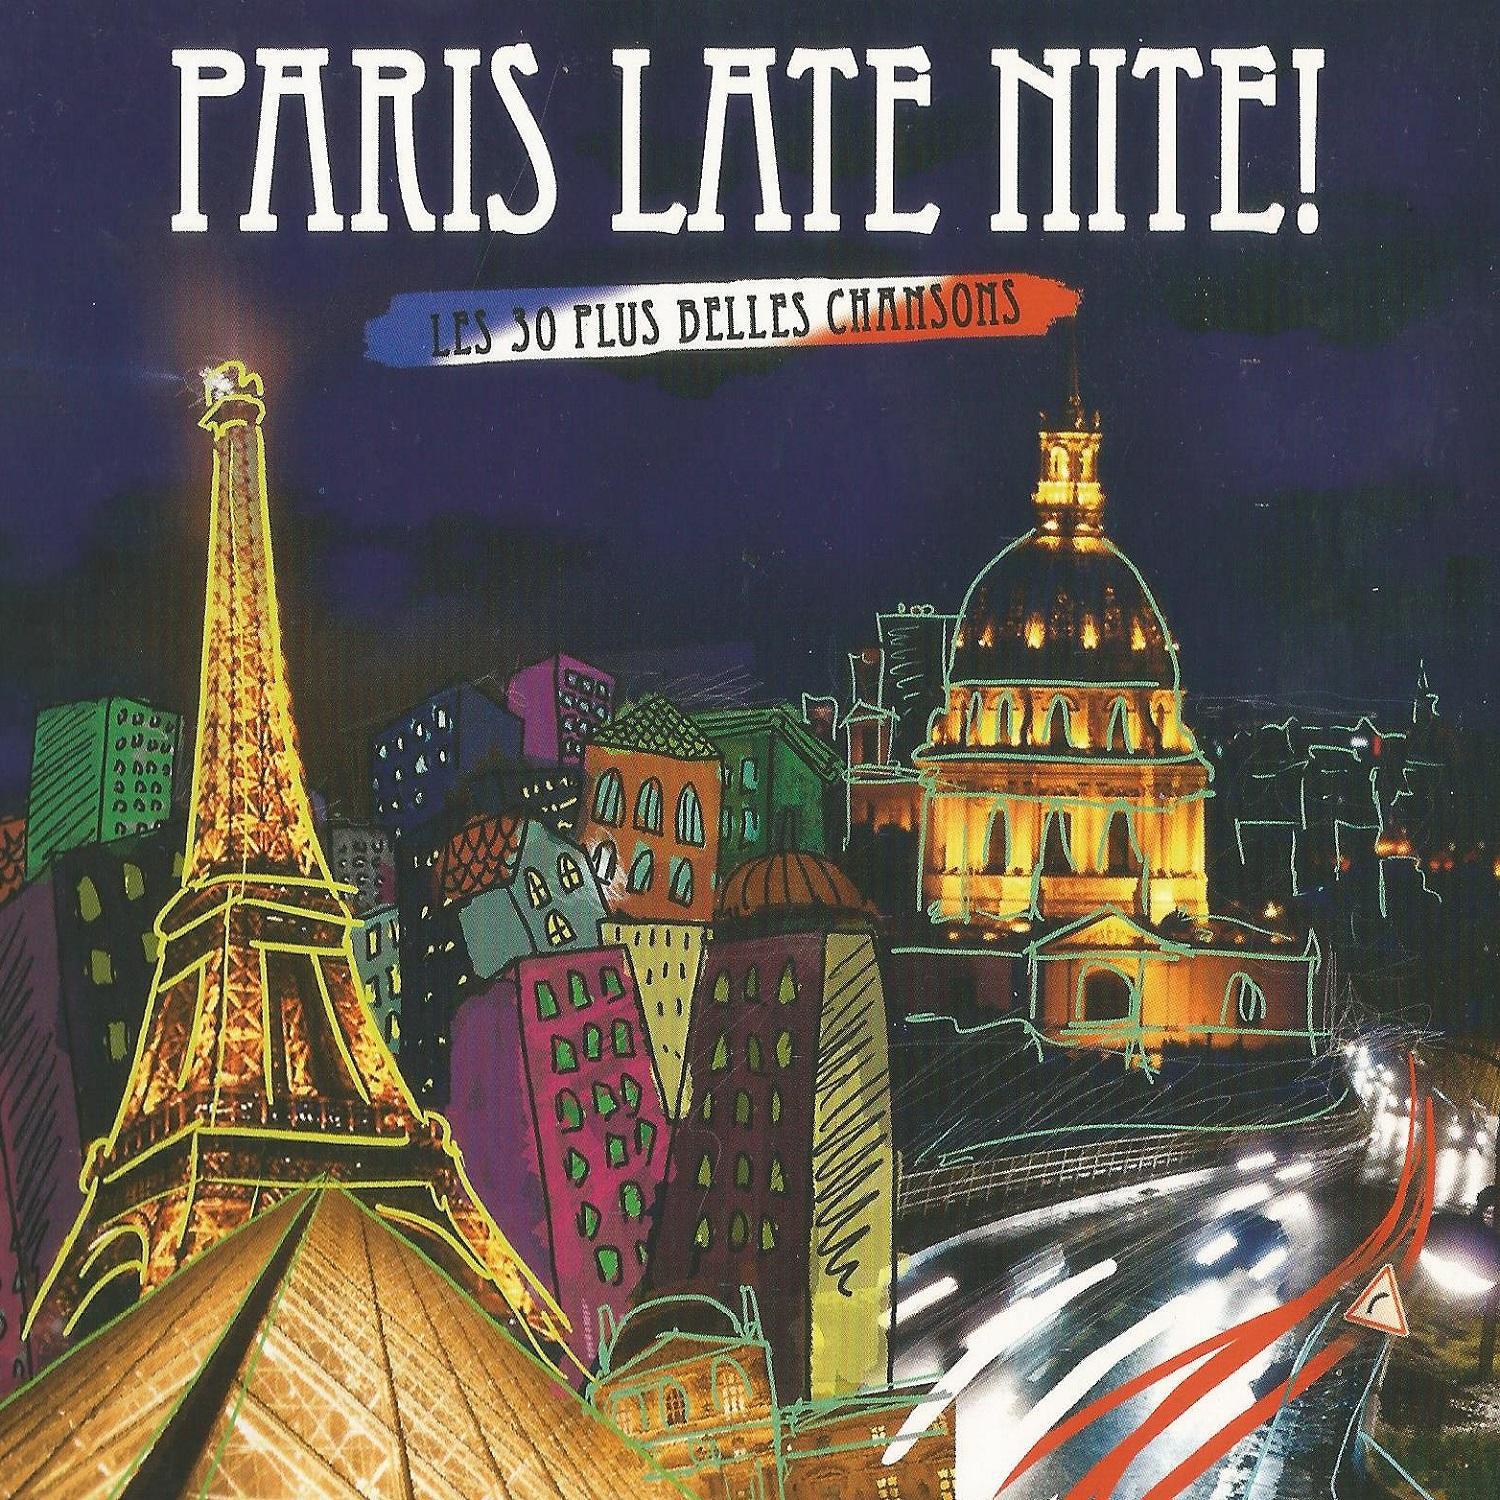 Paris Late Nite: Les 30 plus belles chansons